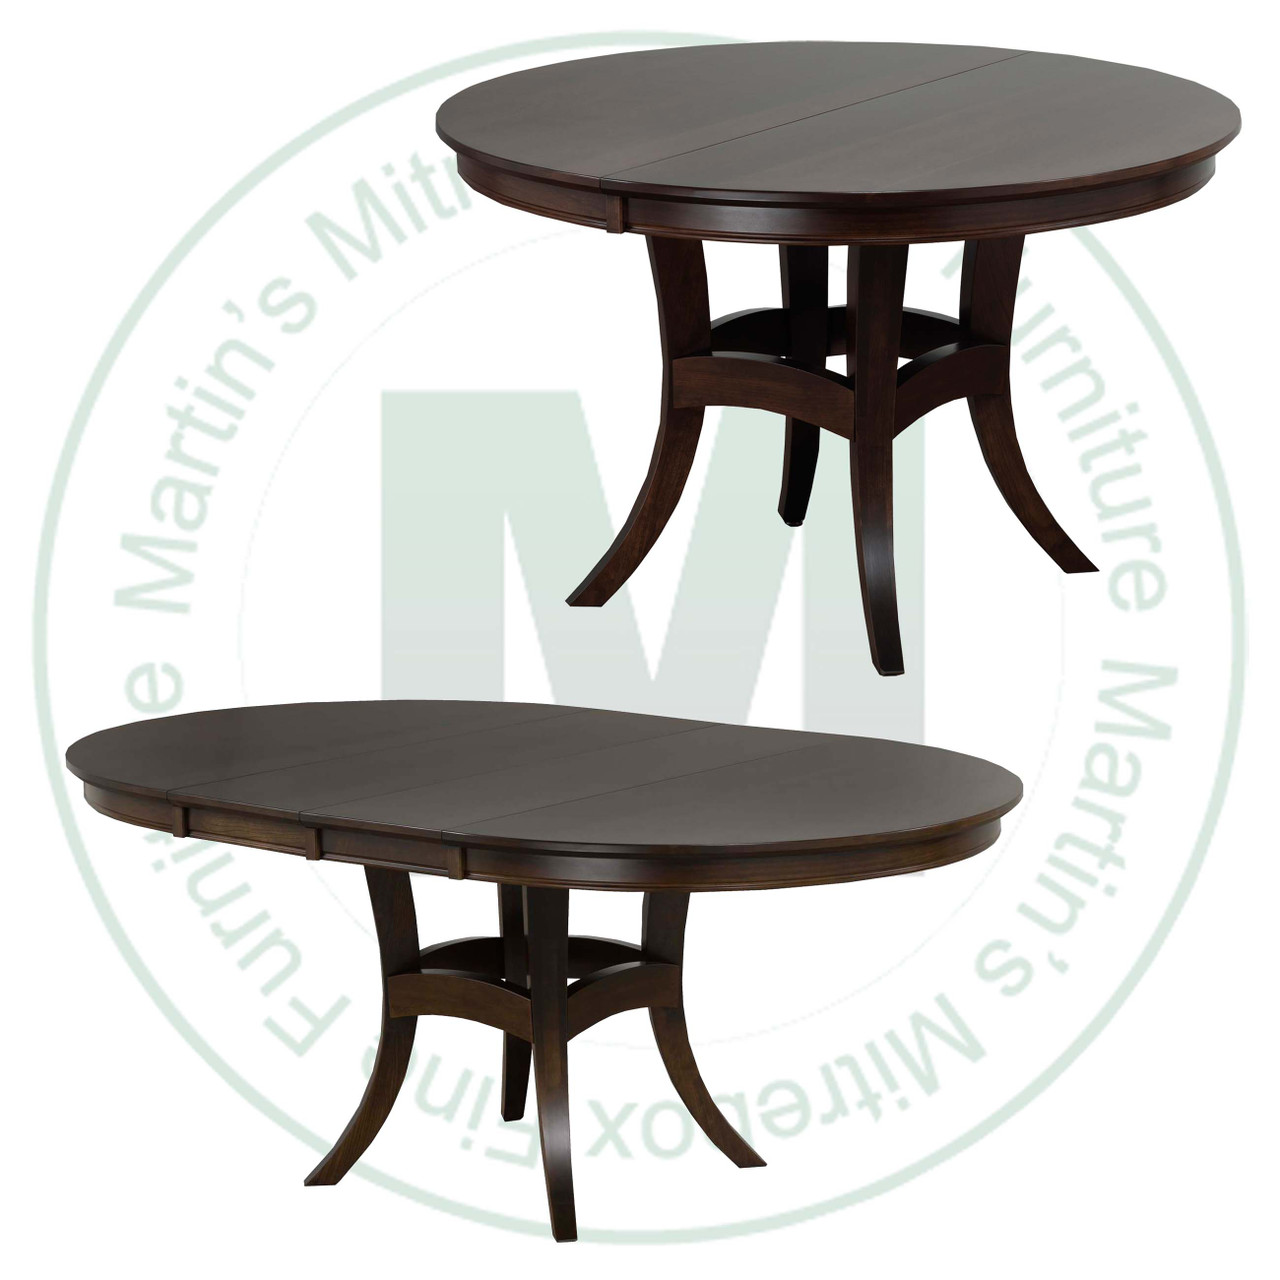 Oak Beijing Single Pedestal Table 48''D x 48''W x 30''H With 1 - 12'' Leaves